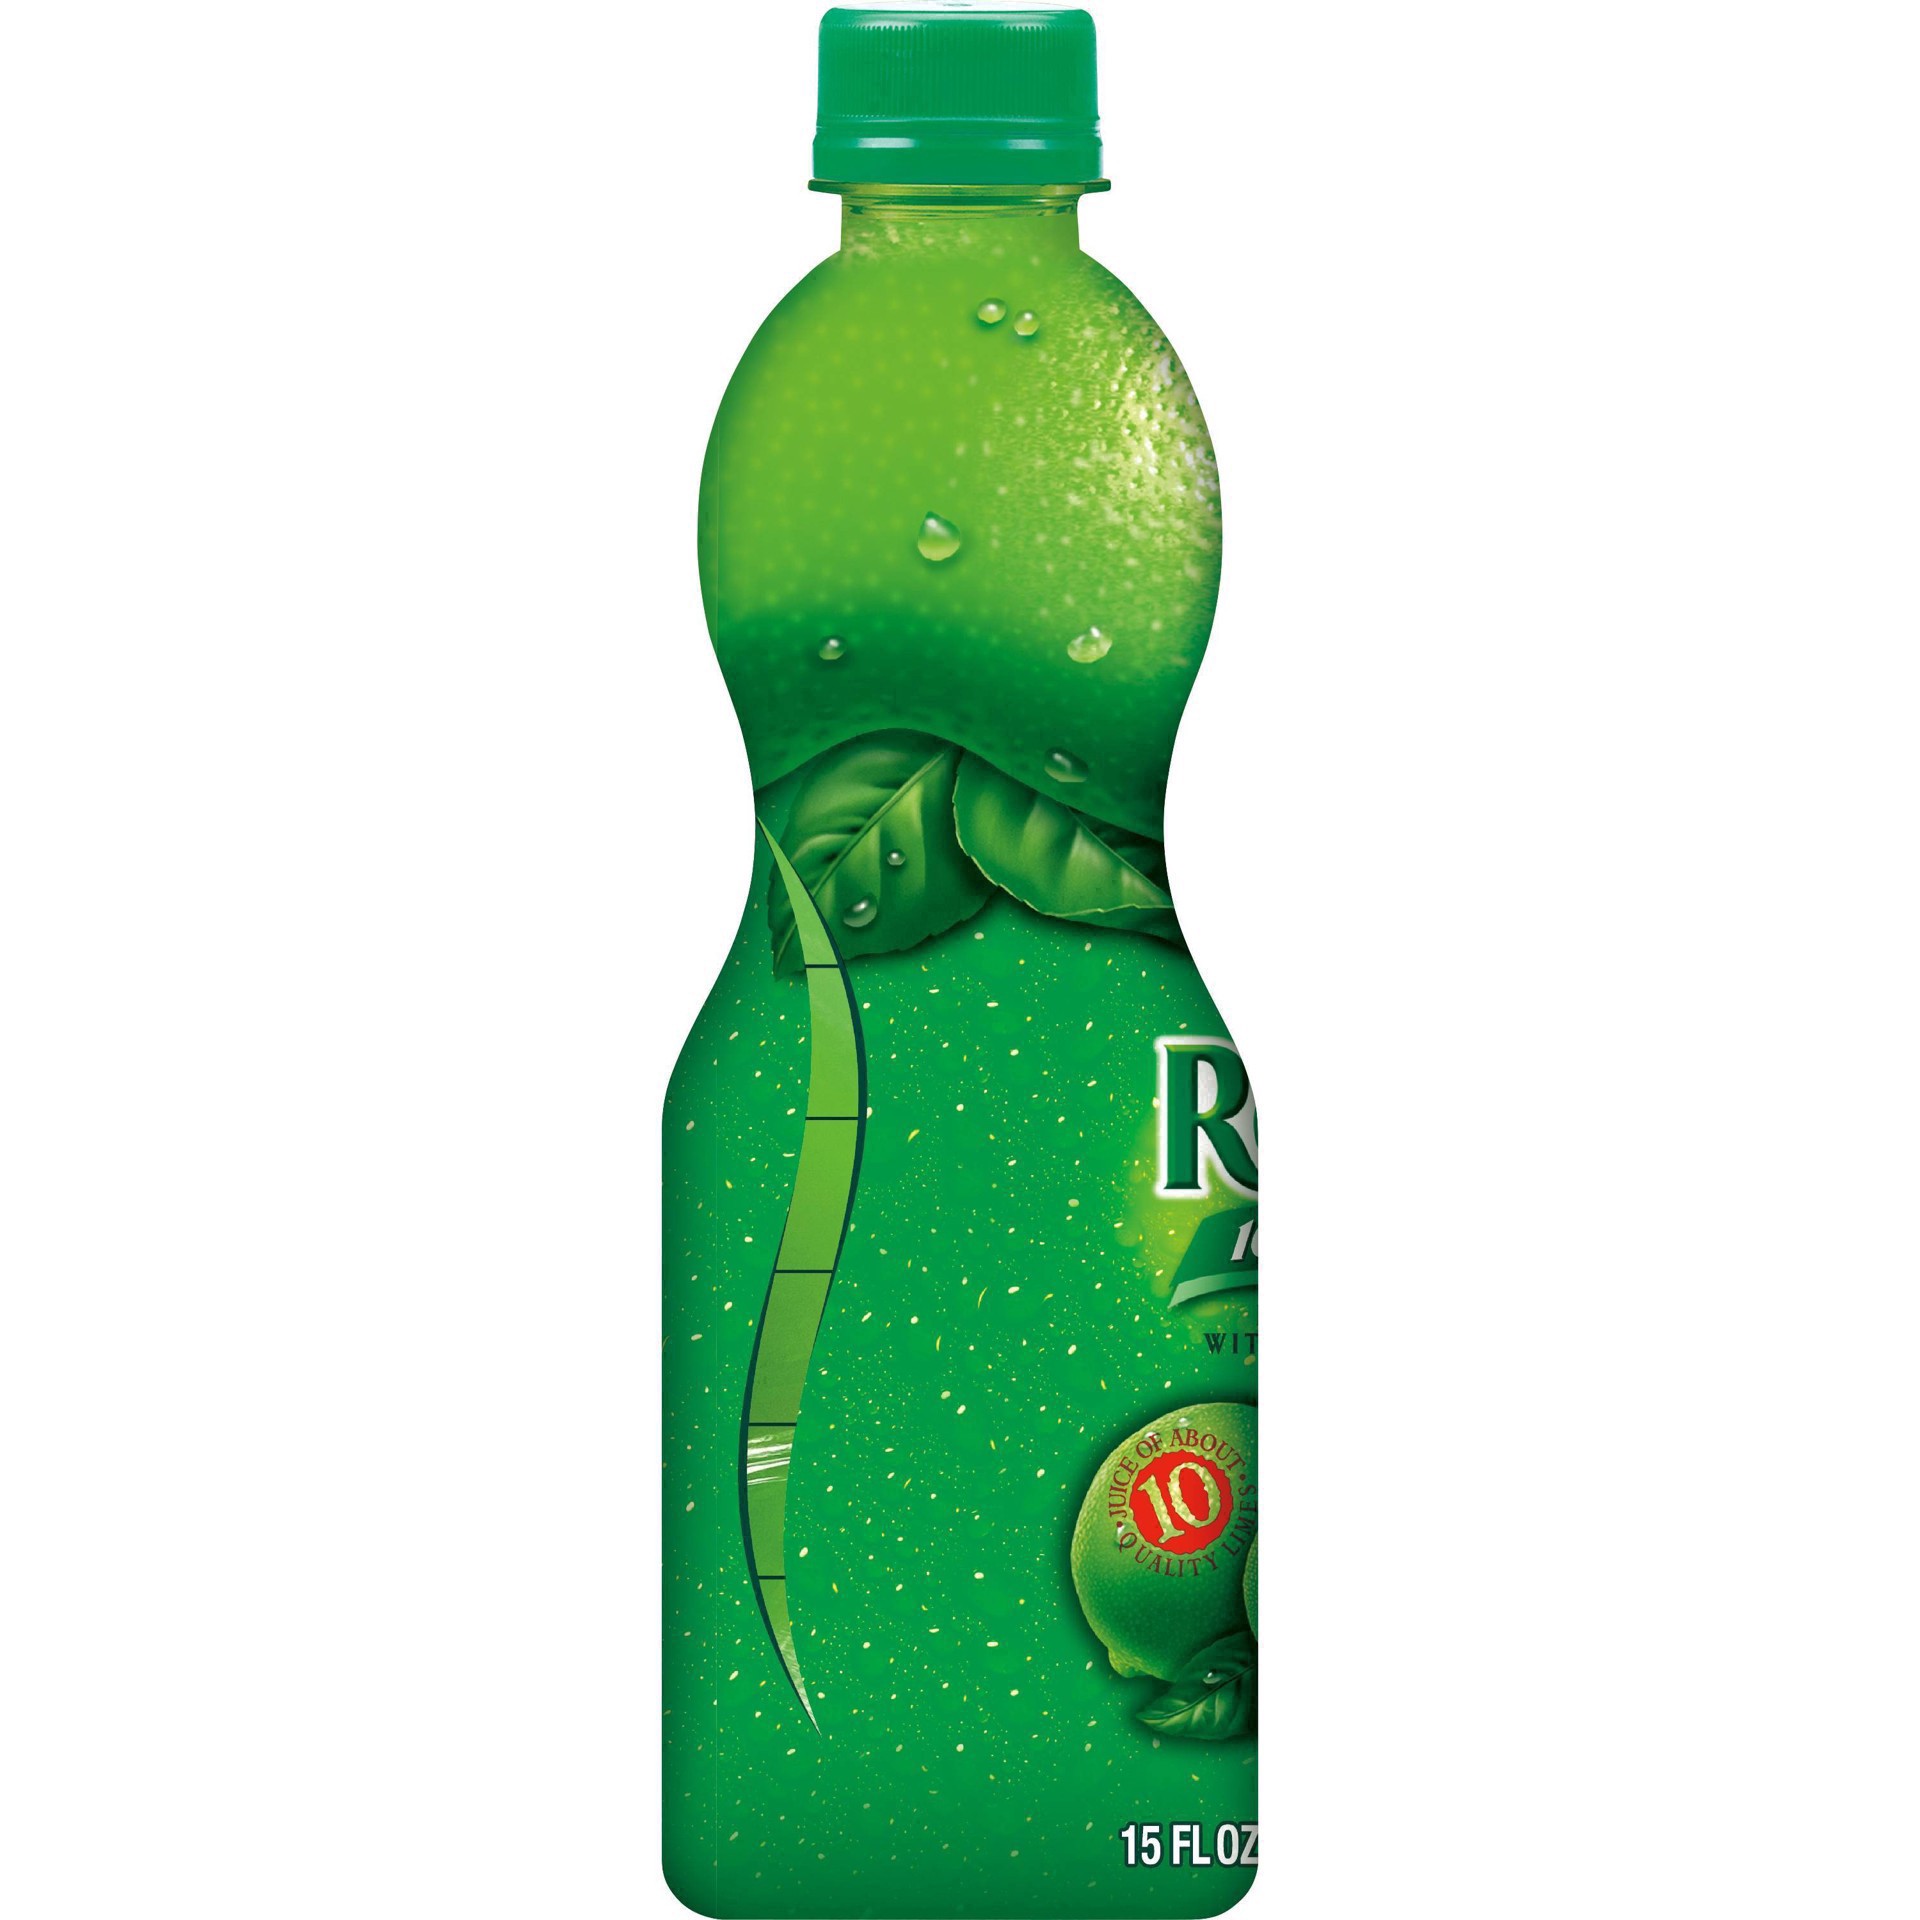 slide 23 of 68, ReaLime 100% Lime Juice Bottle, 15 fl oz